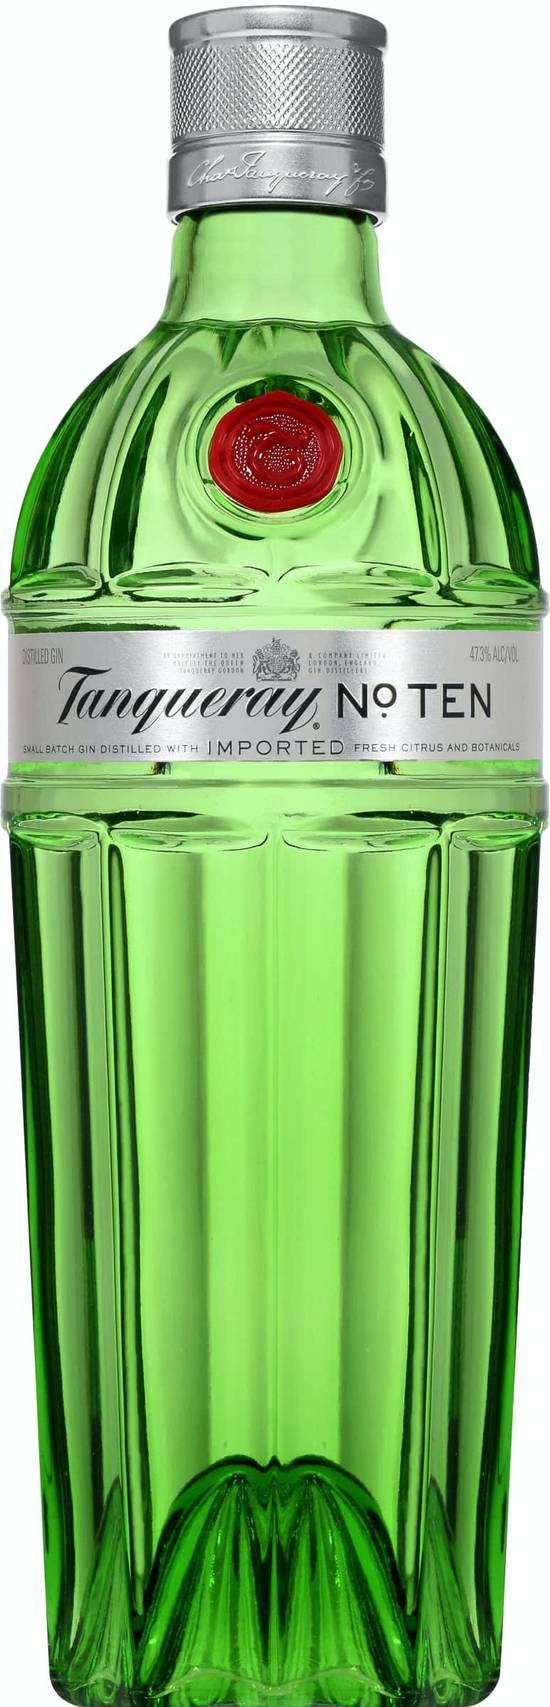 Tanqueray No. Ten Gin (750ml bottle)